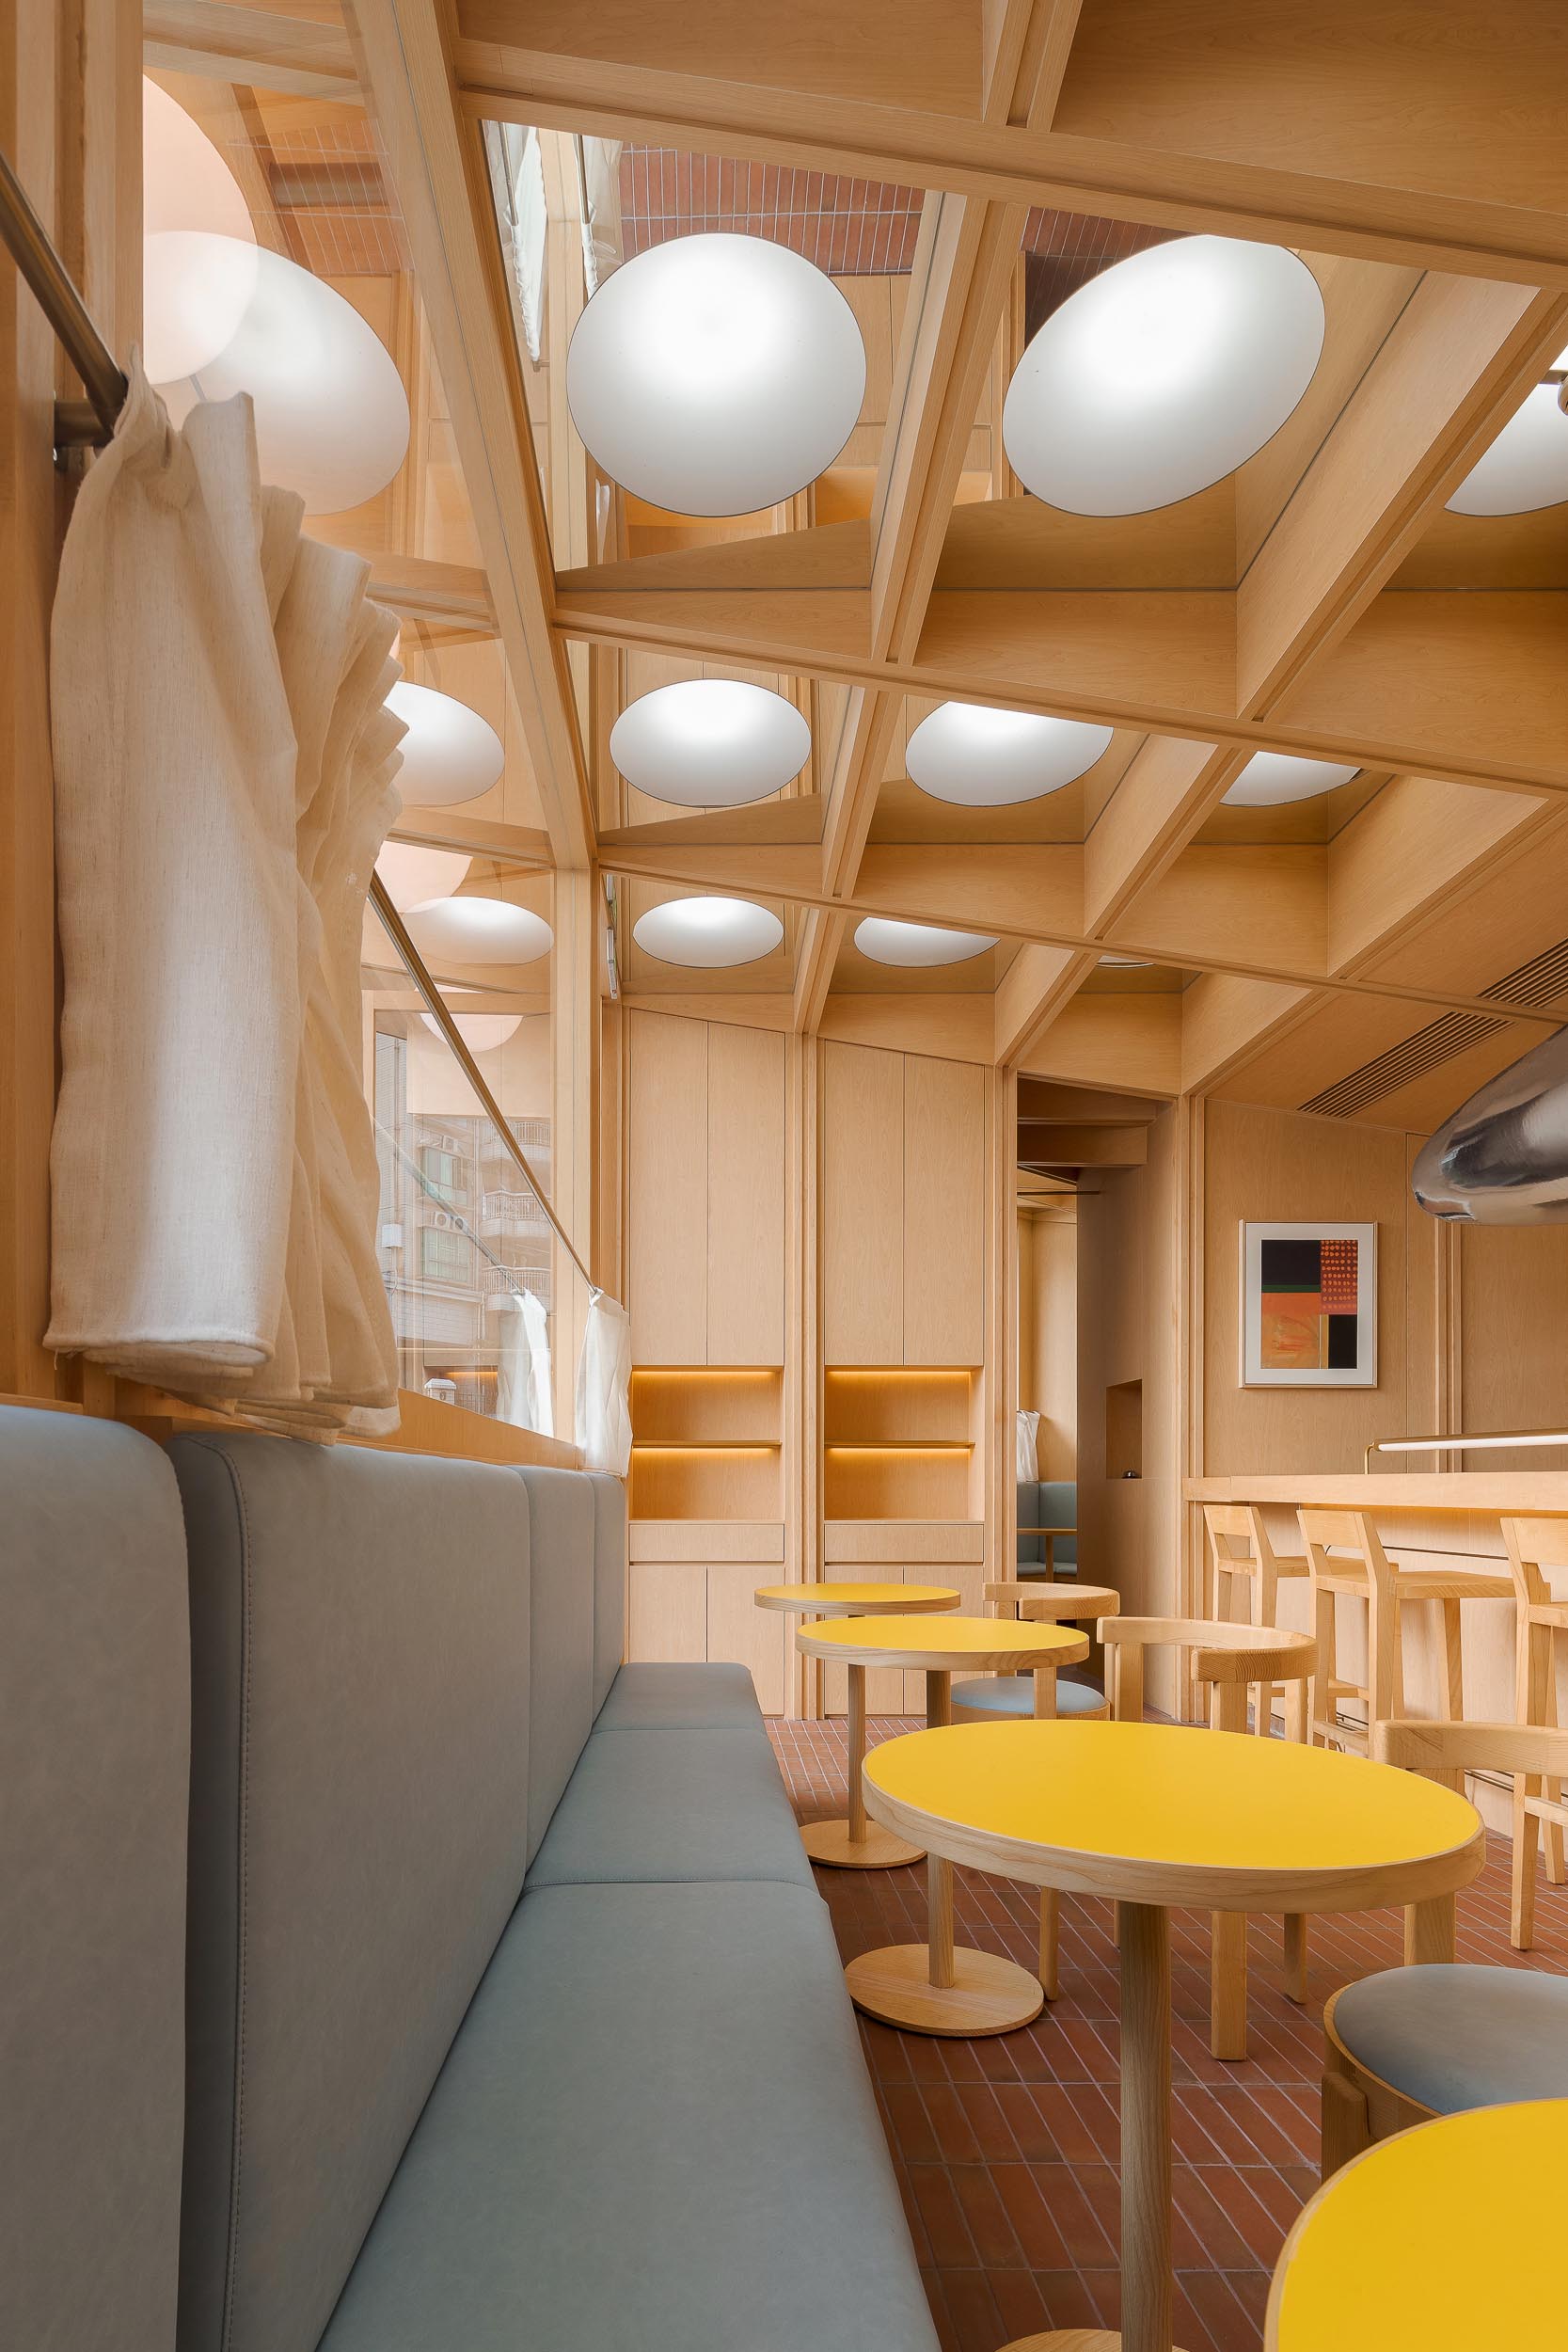 Современное кафе и бар с деревянным интерьером, банкетными креслами и ярко-желтыми столиками.